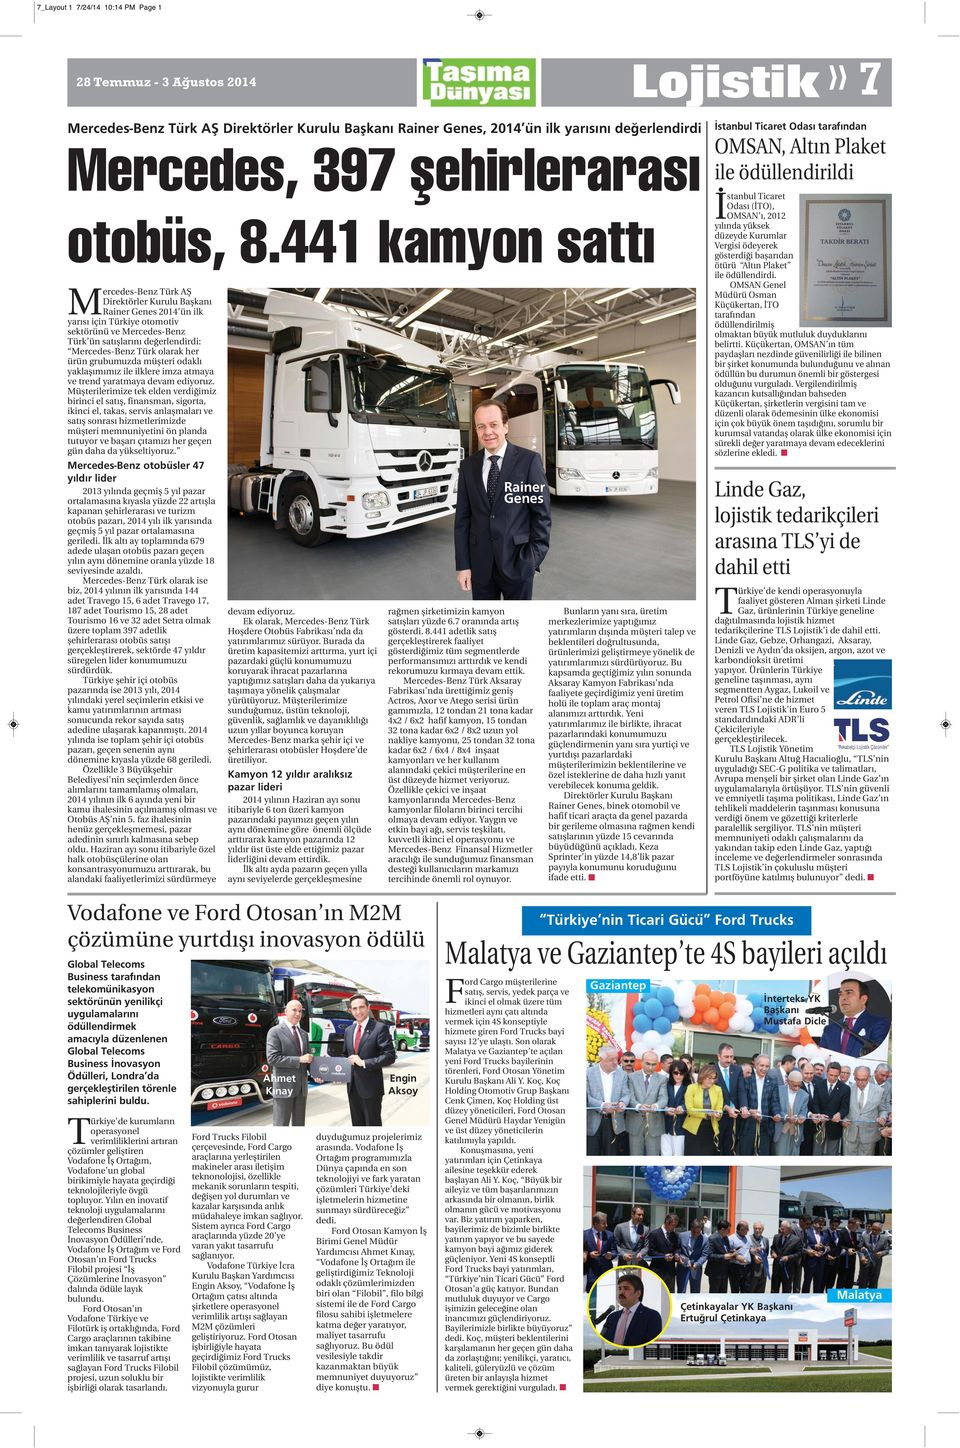 441 kamyon sattı Mercedes-Benz Türk AŞ Direktörler Kurulu Başkanı Rainer Genes 2014 ün ilk yarısı için Türkiye otomotiv sektörünü ve Mercedes-Benz Türk ün satışlarını değerlendirdi: Mercedes-Benz